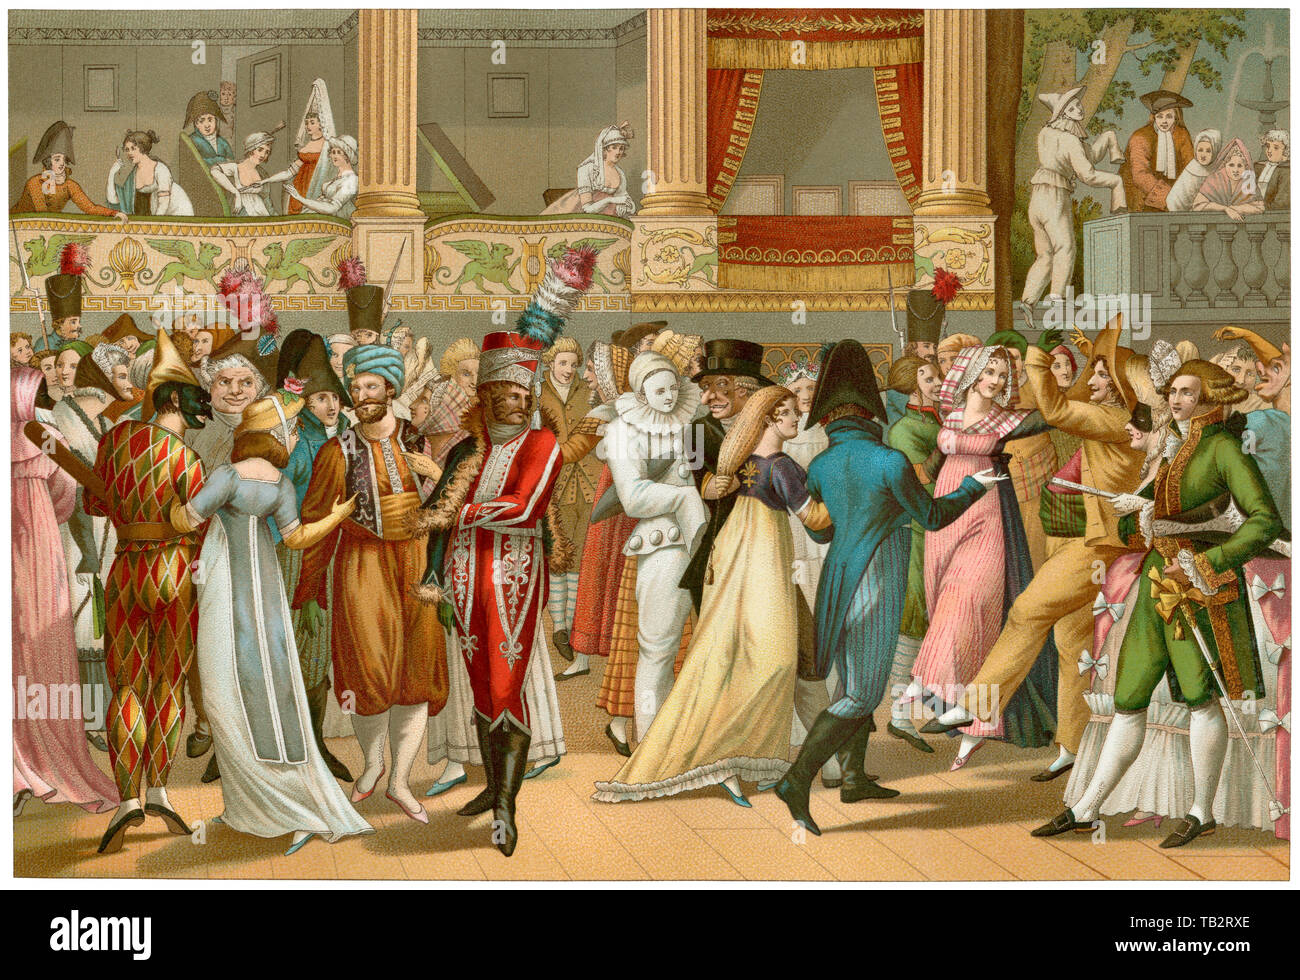 Costume bal à l'Opéra, Paris, début des années 1800. Lithographie couleur Banque D'Images